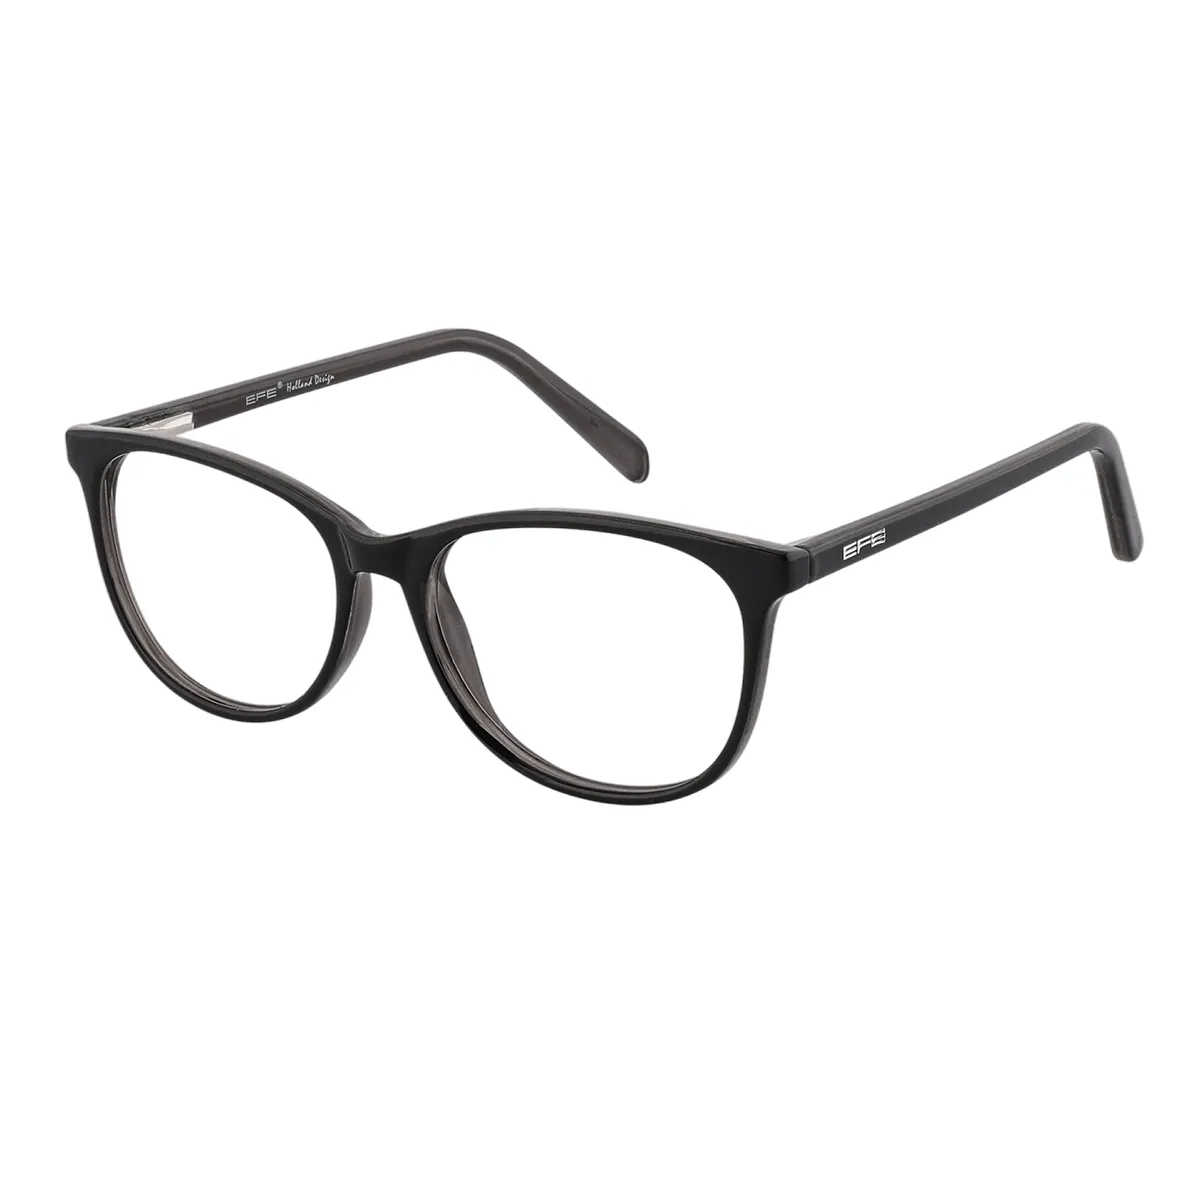 Classic Cat-eye Black Reading Glasses for Women & Men